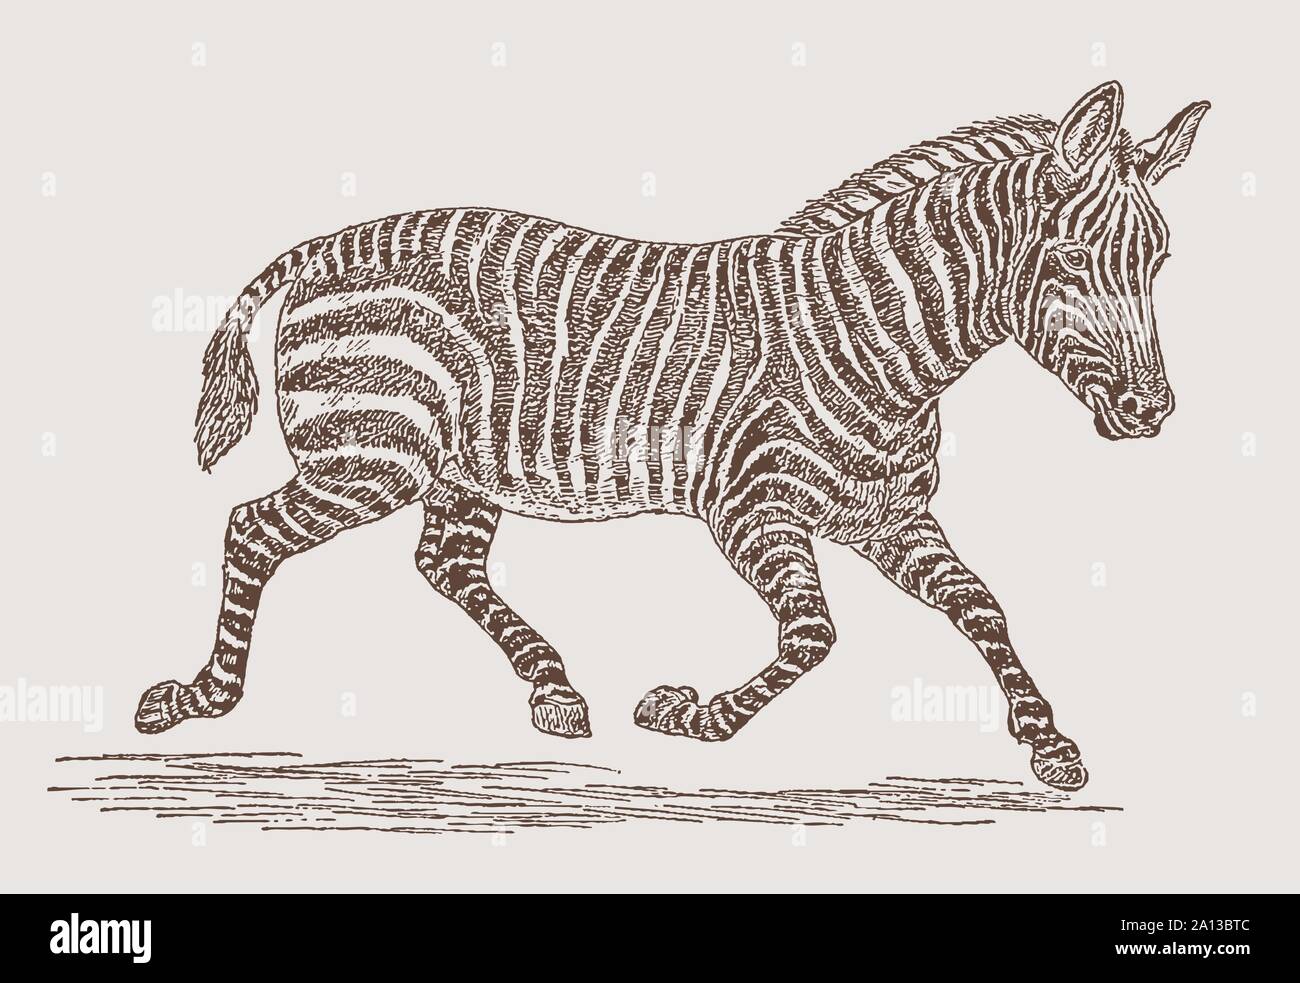 L'exécution de zèbre des plaines (Equus quagga) en vue de côté. Illustration après une gravure du xixe siècle Illustration de Vecteur